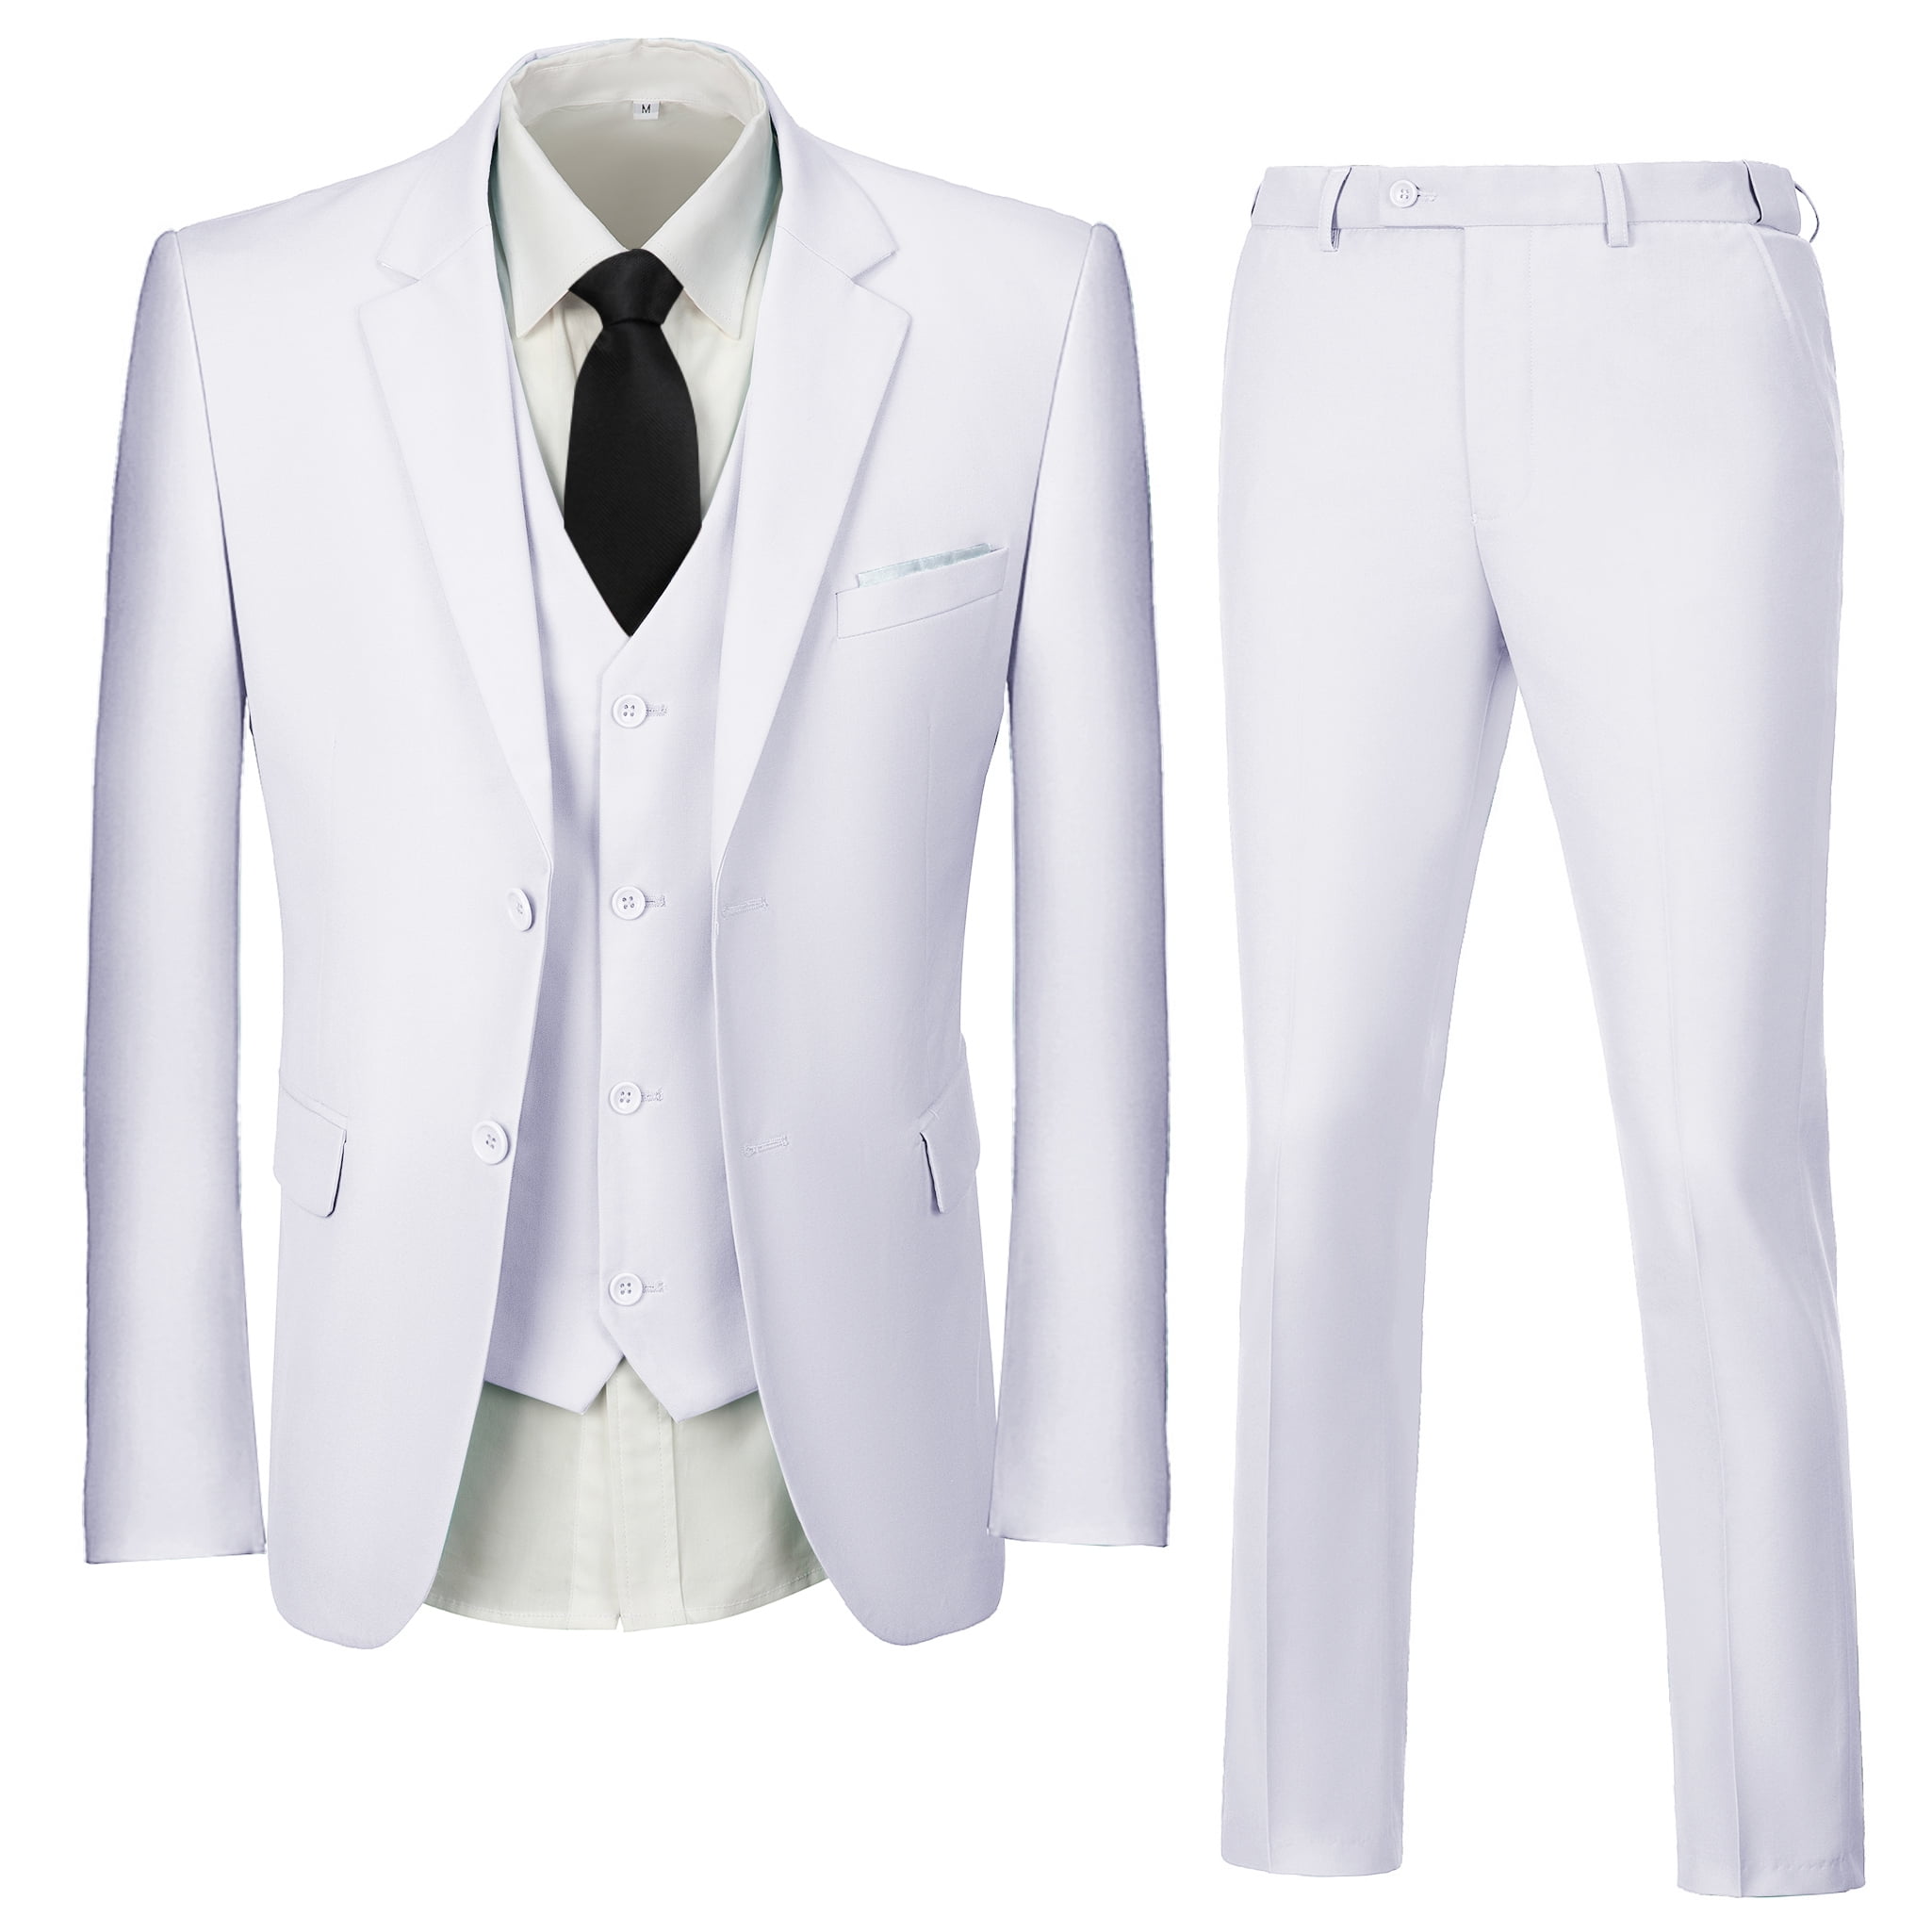 Wehilion Suit for Men Vintage Retro Wedding Suits Set Slim Fit 3 Pieces Jacket Blazer Groom Tuxedo Prom Mens Suit Royal Blue M, Men's, Size: Medium